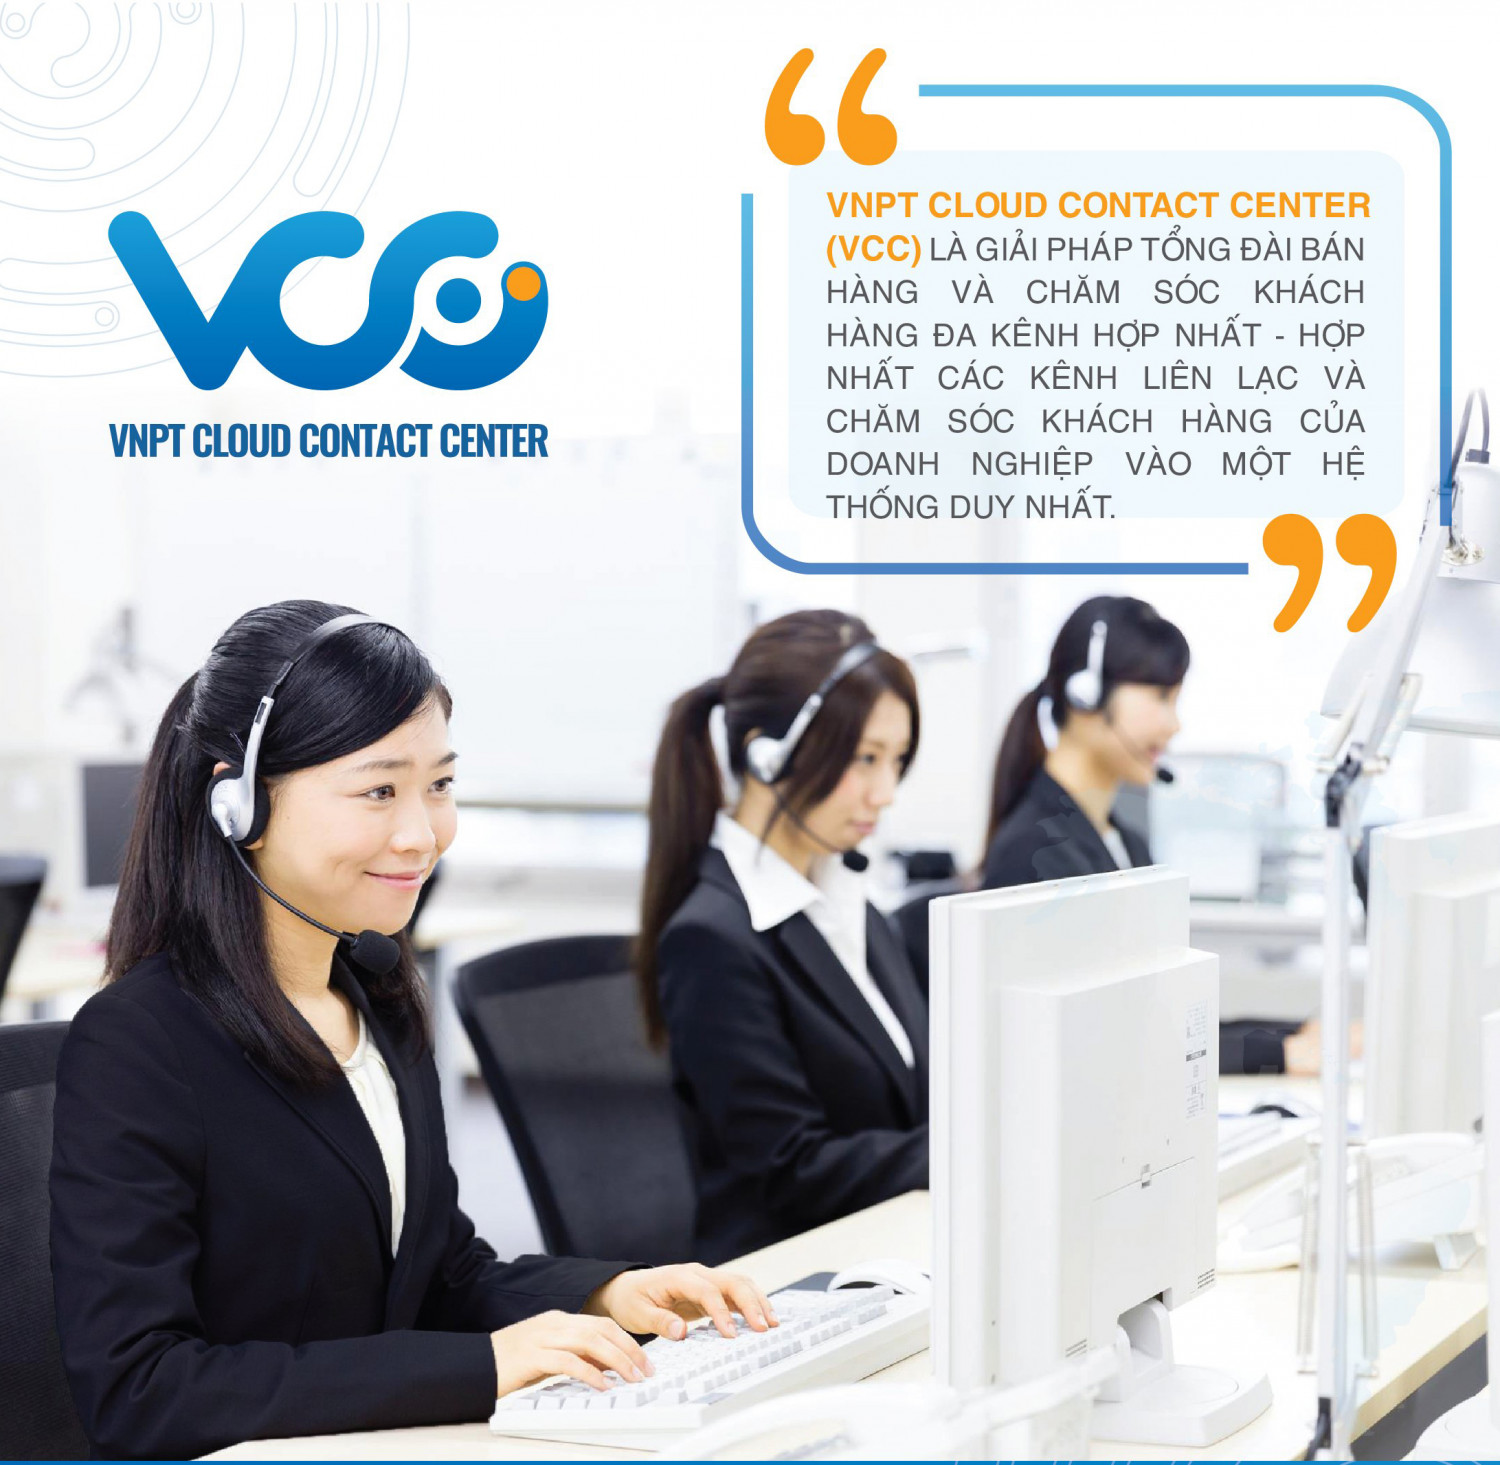 VNPT Cloud Contact Center (VCC)